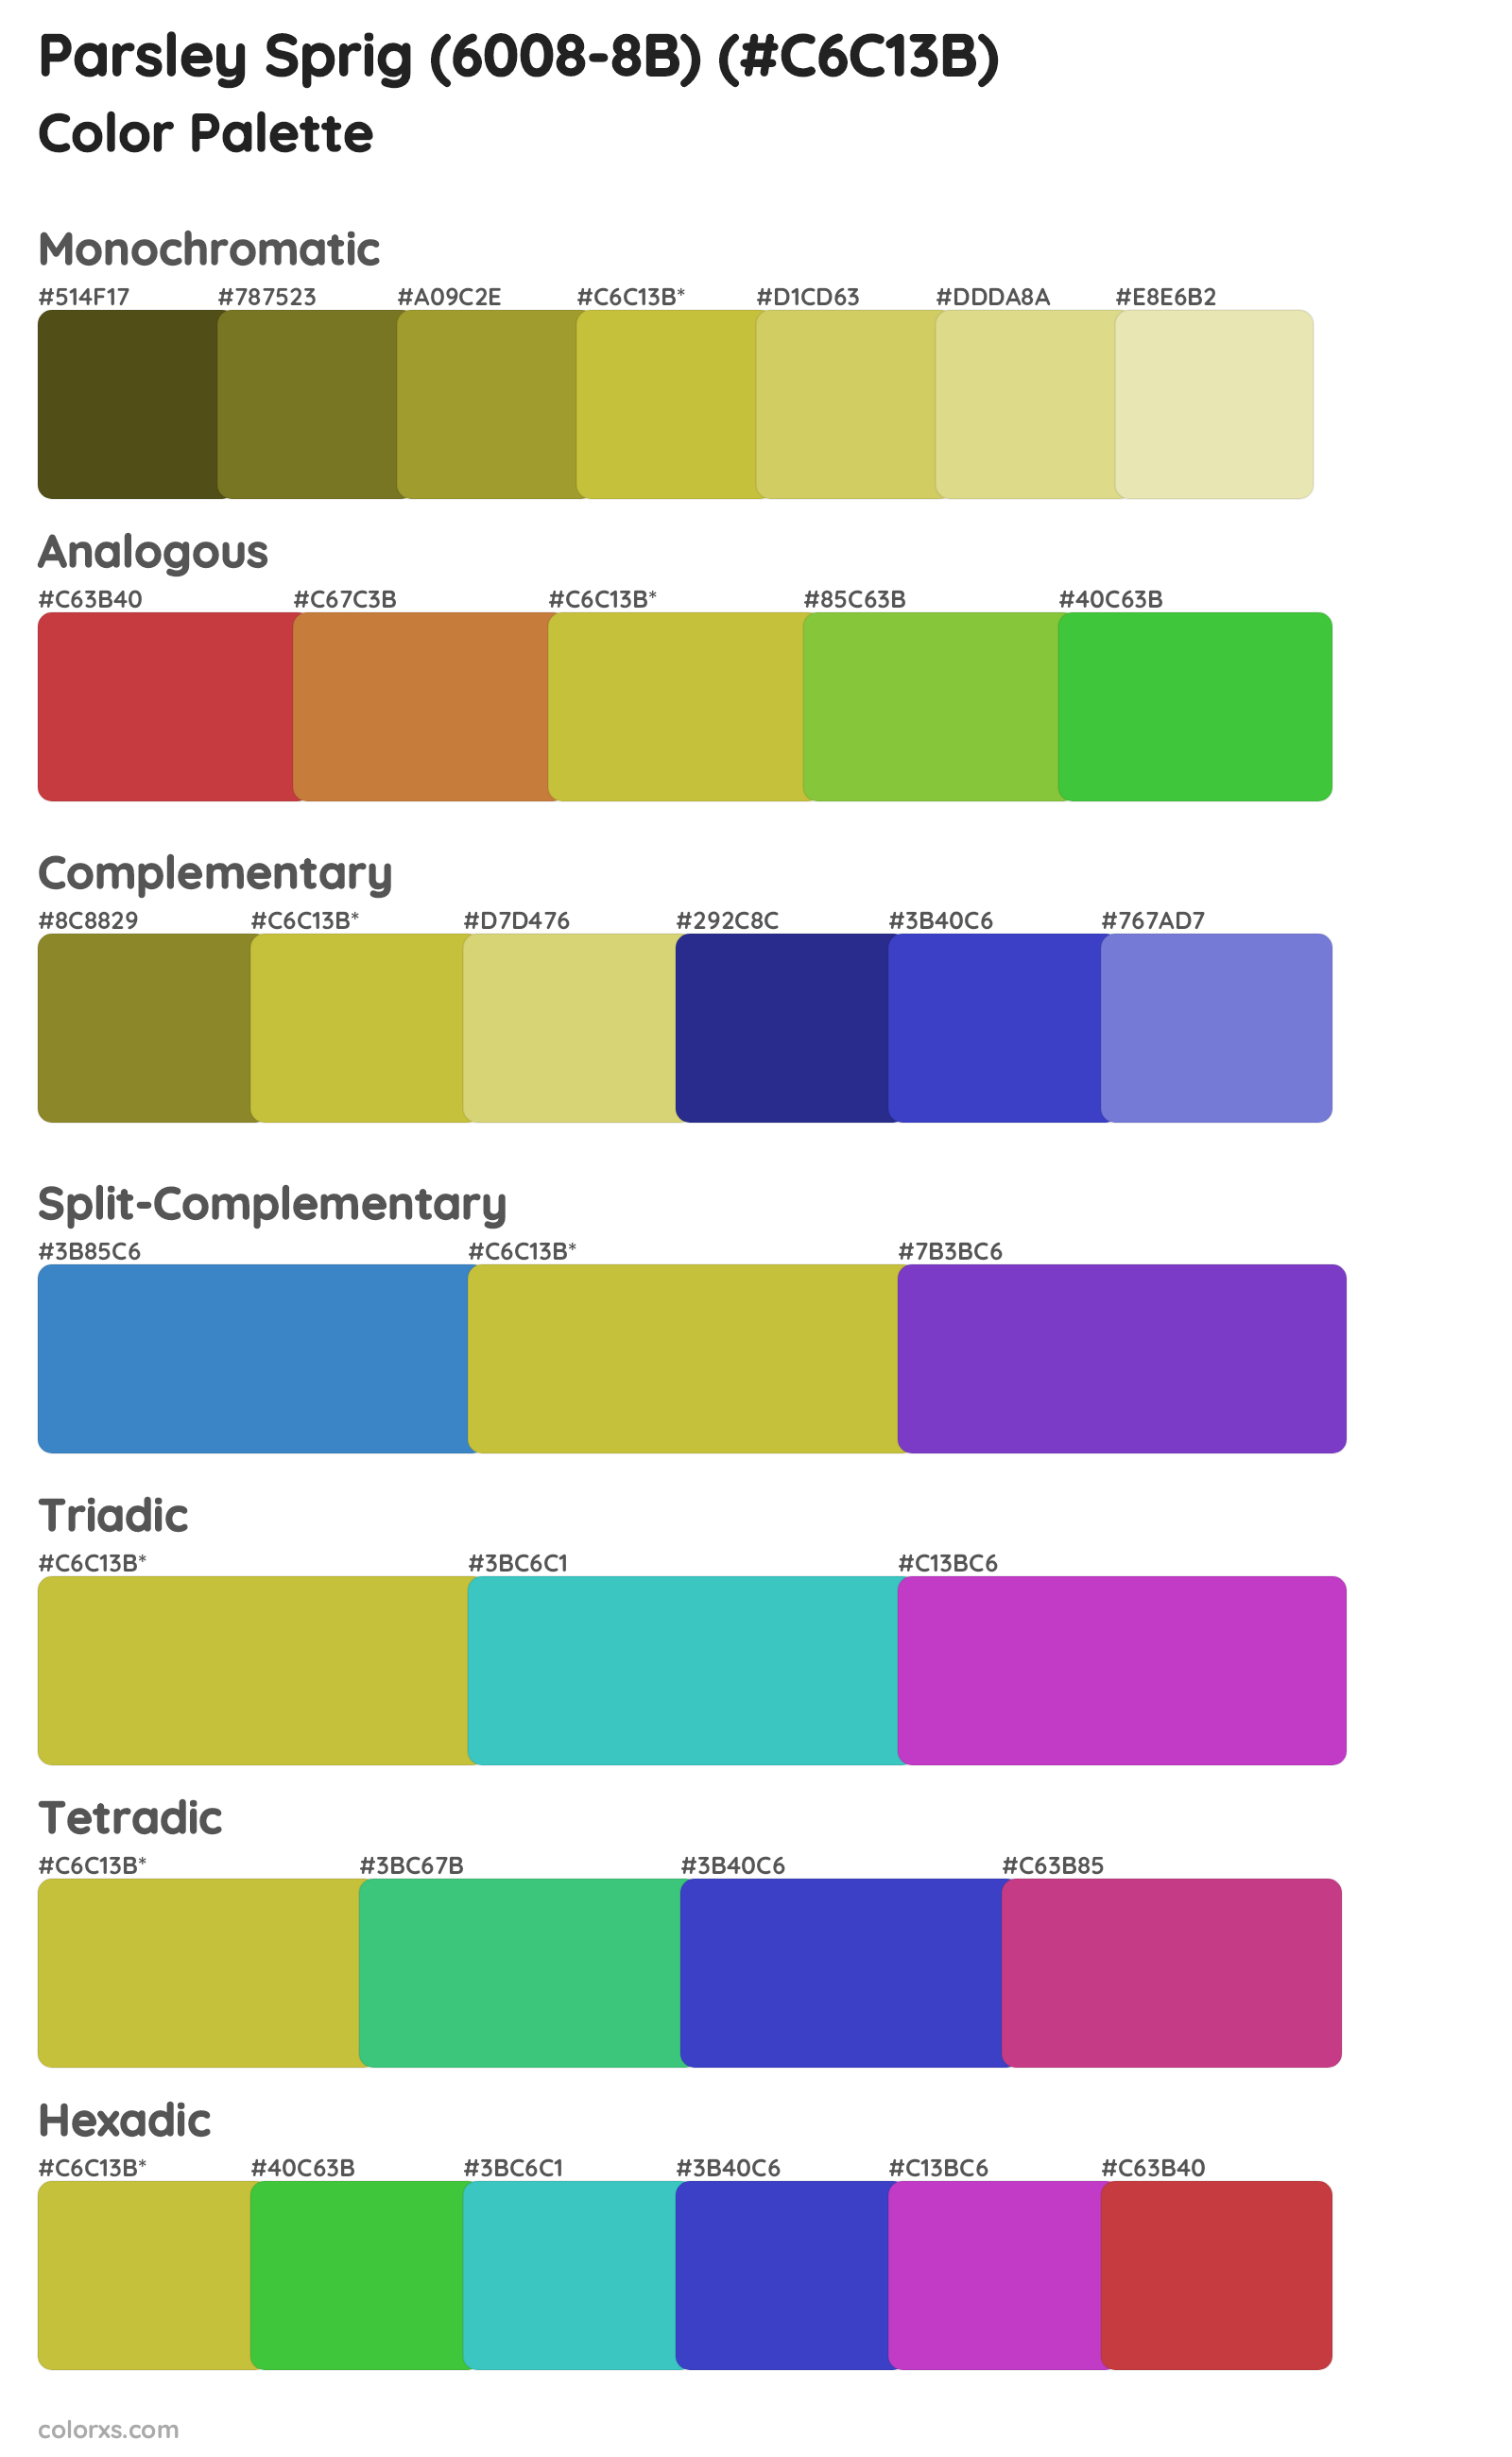 Parsley Sprig (6008-8B) Color Scheme Palettes